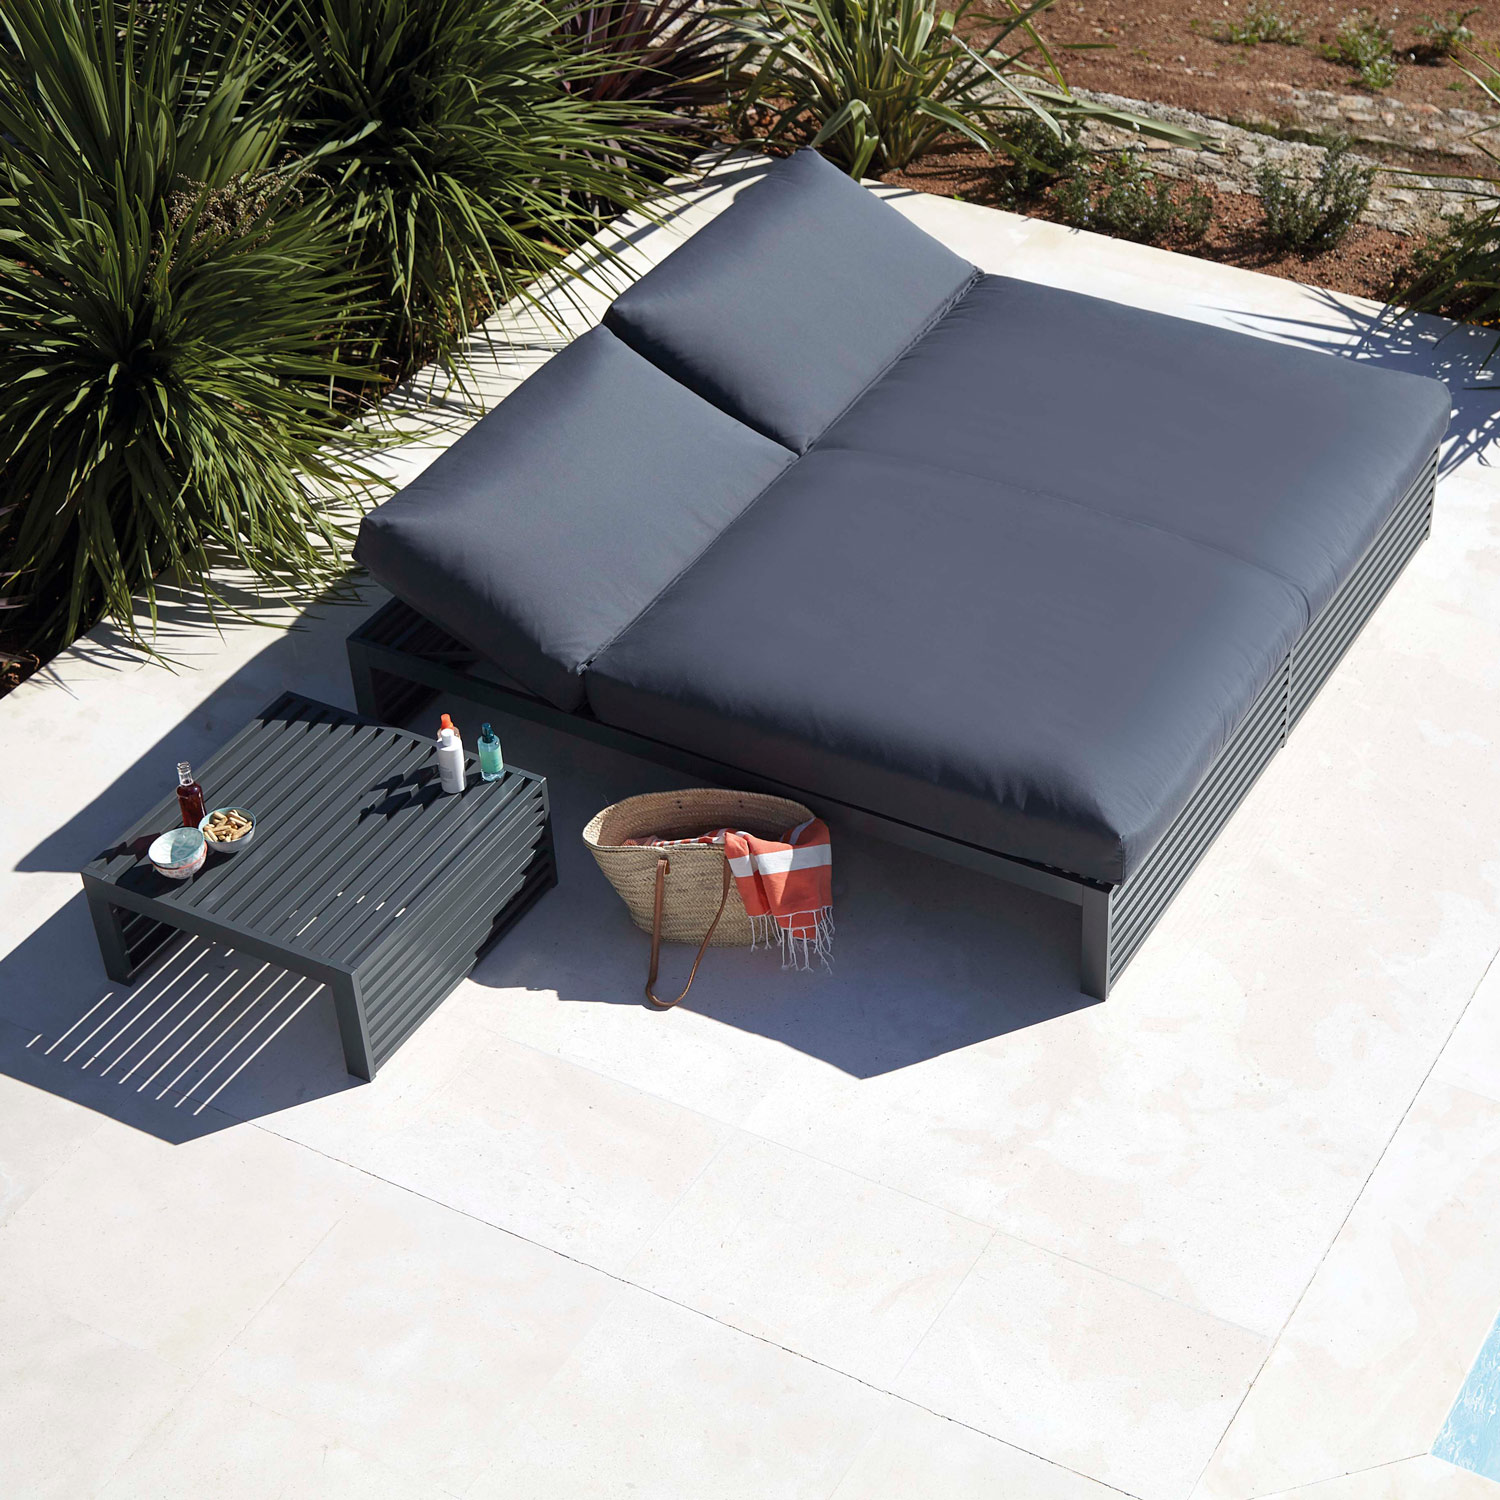 DNA luksuriøse møbler til ren afslapning og nydelse på terrassen fra Gitz Design og Gandia Blasco